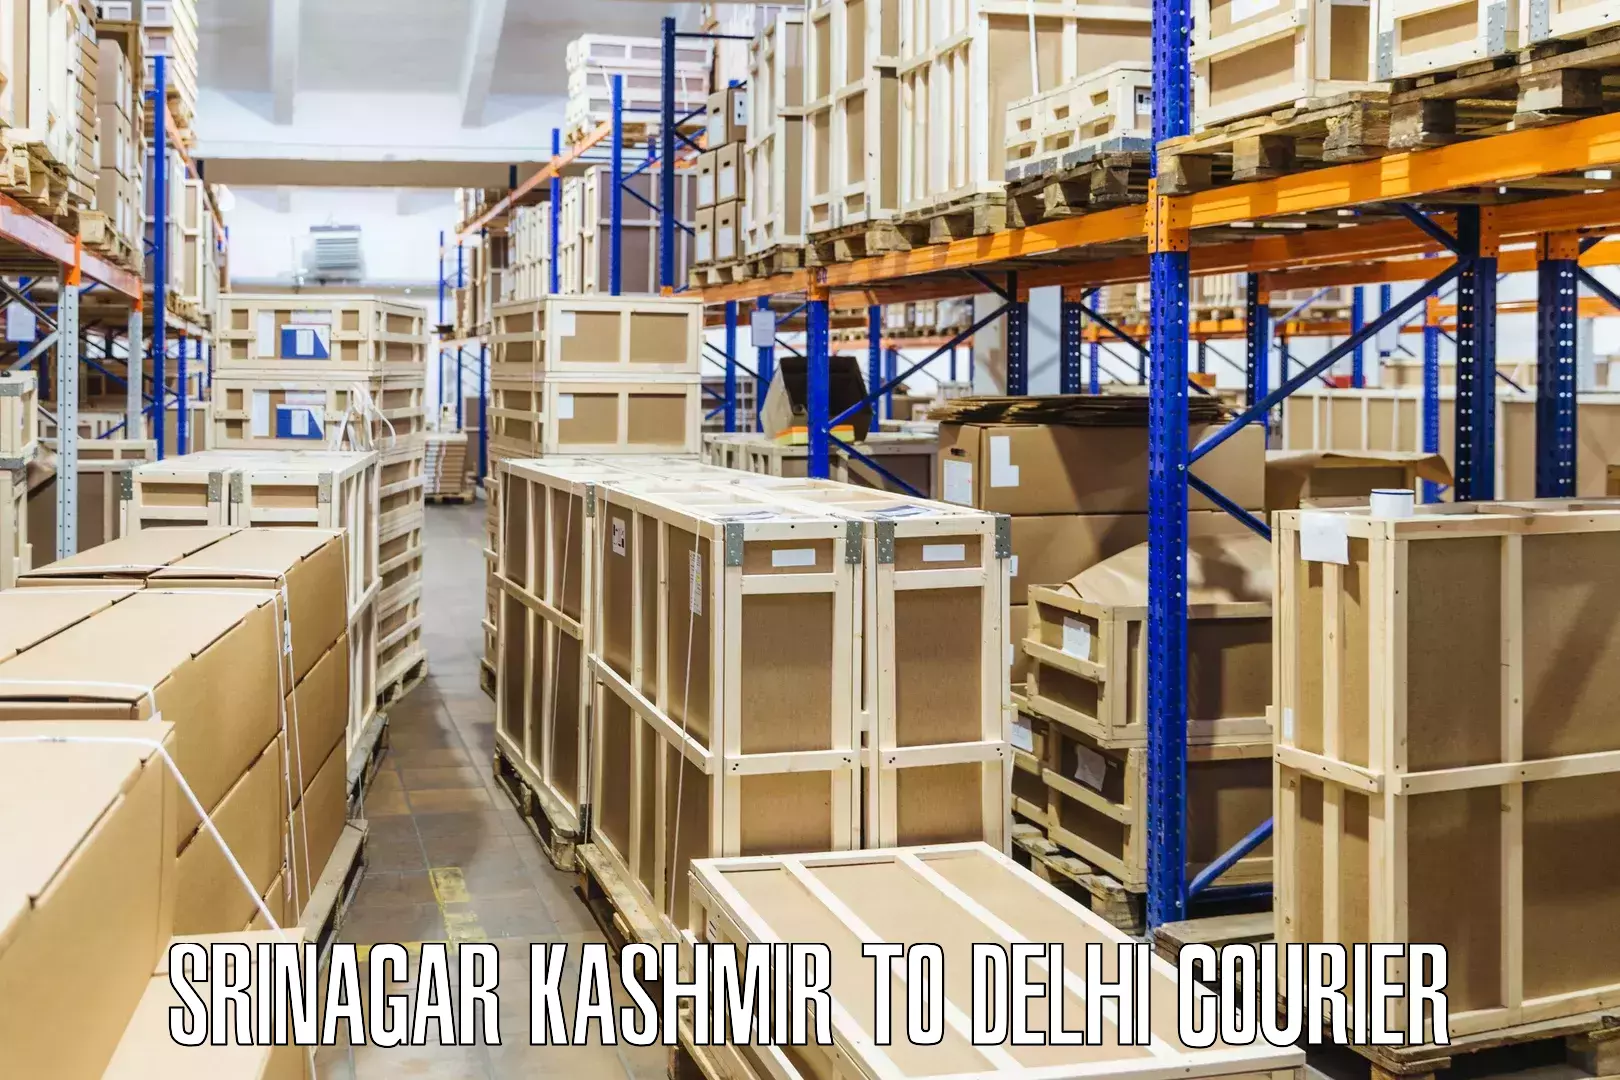 Reliable courier service Srinagar Kashmir to NIT Delhi